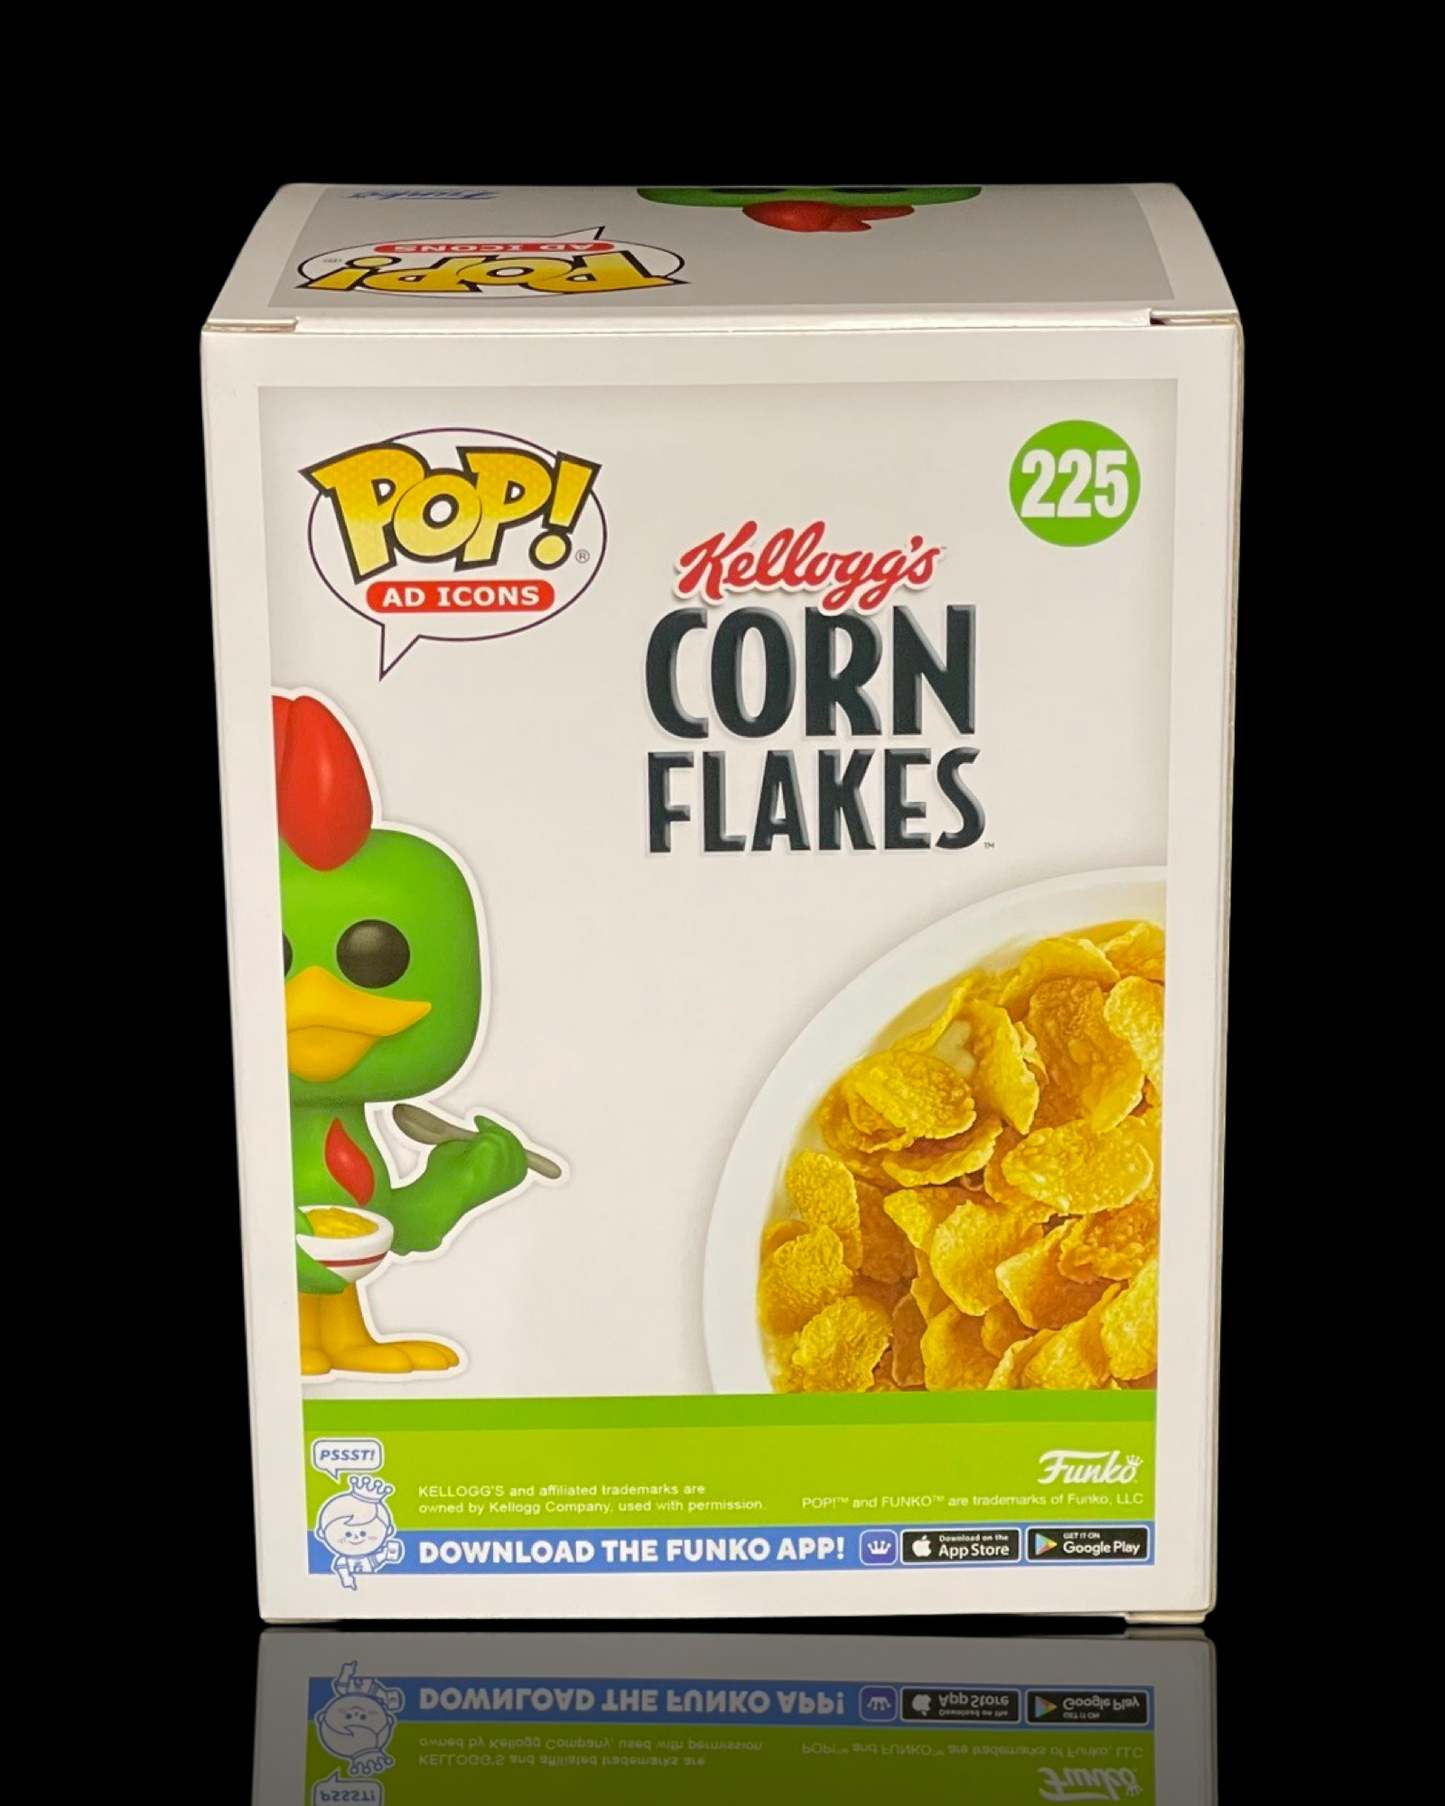 Kellogg's Corn Flakes: Cornelius